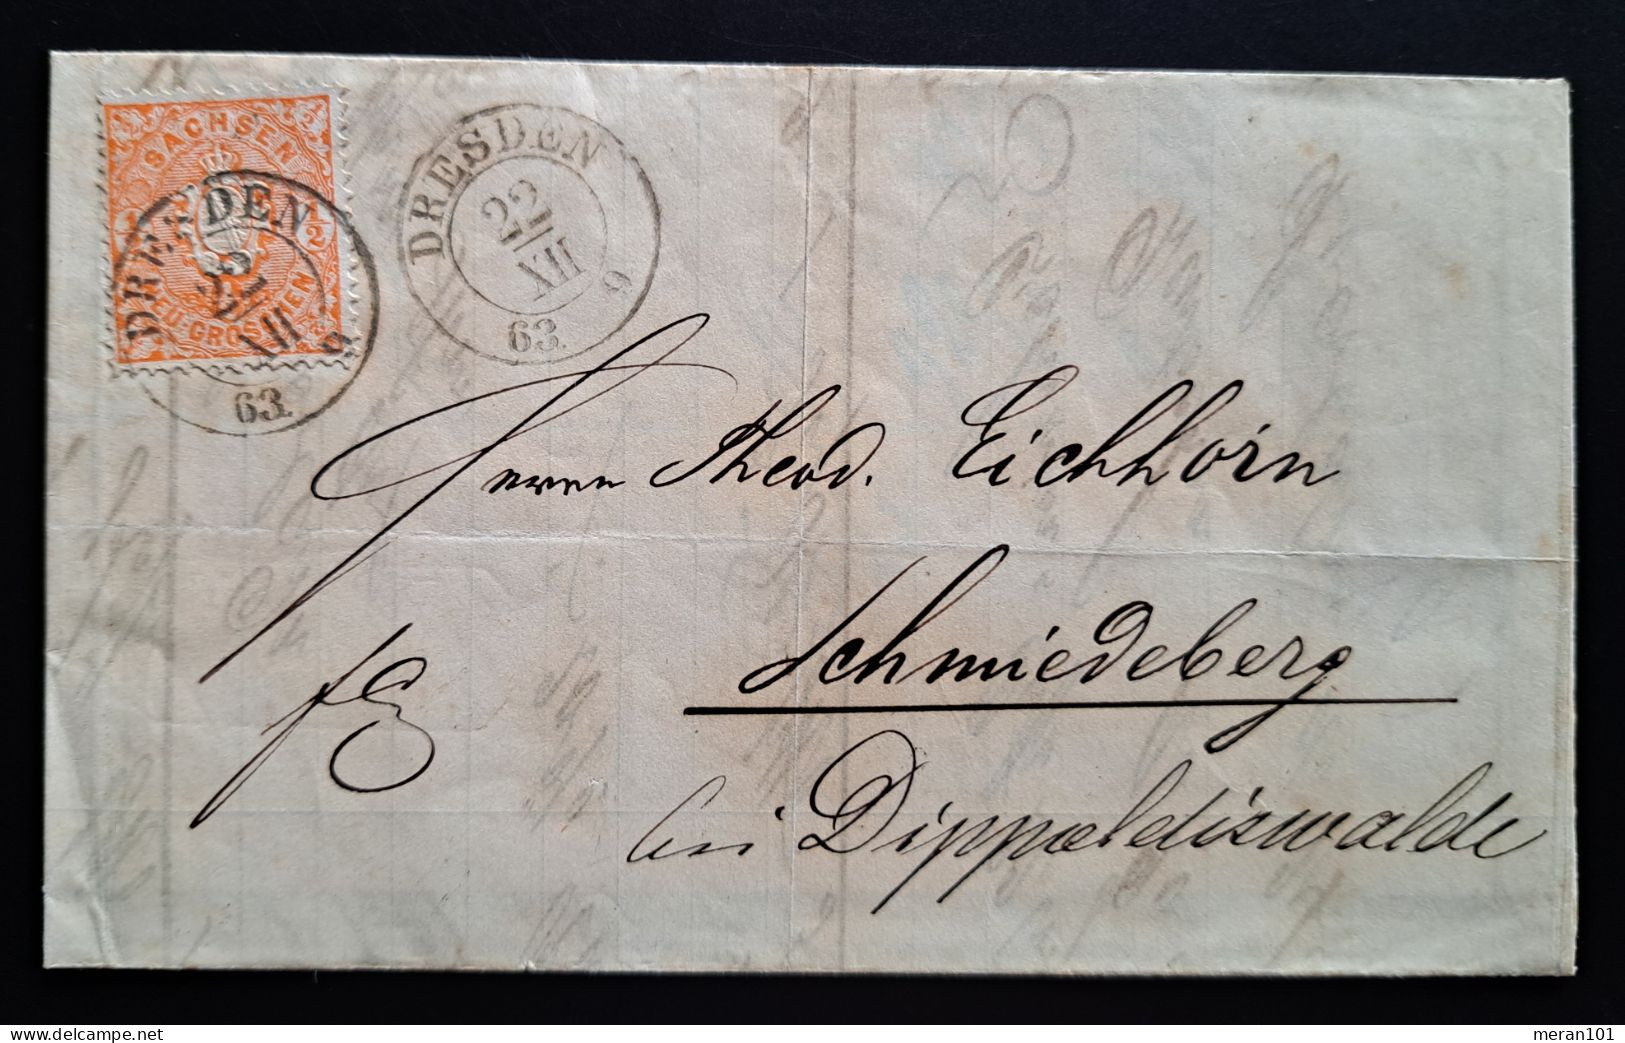 Sachsen 1863, Brief Mit Inhalt DRESDEN 22/XII/ 63 - Saxony